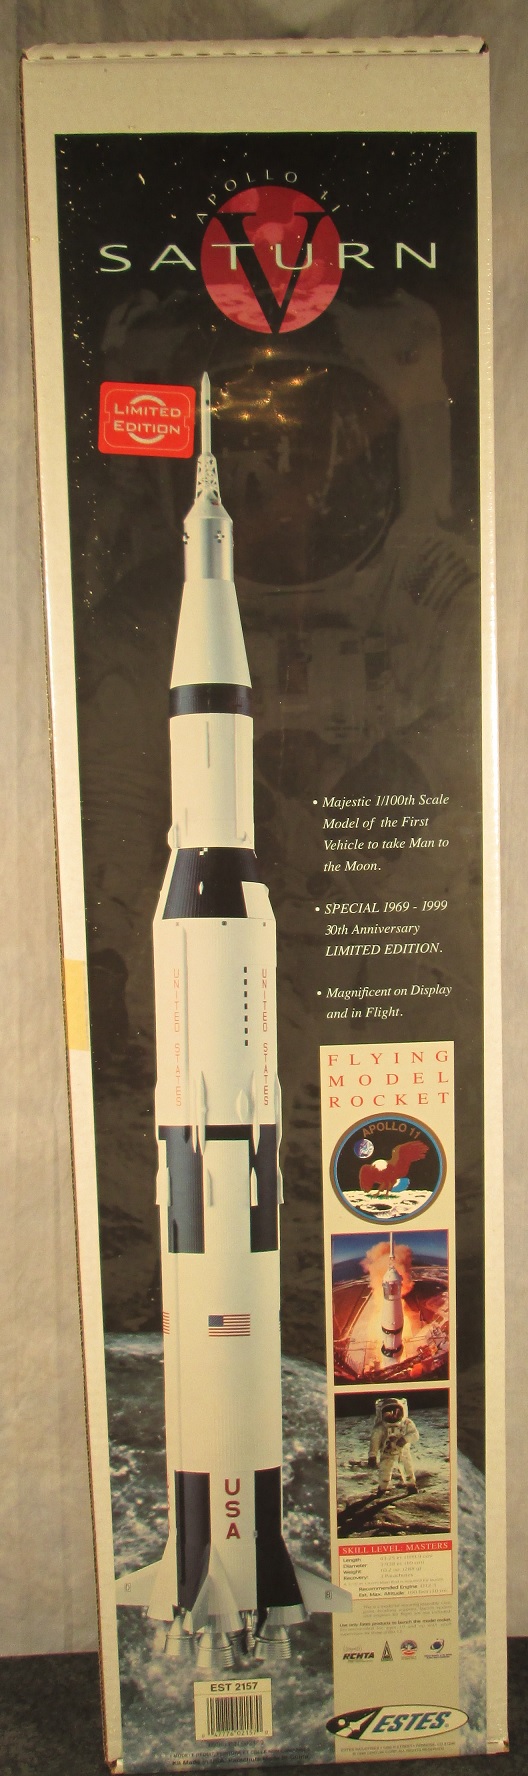 apollo 17 rocket model